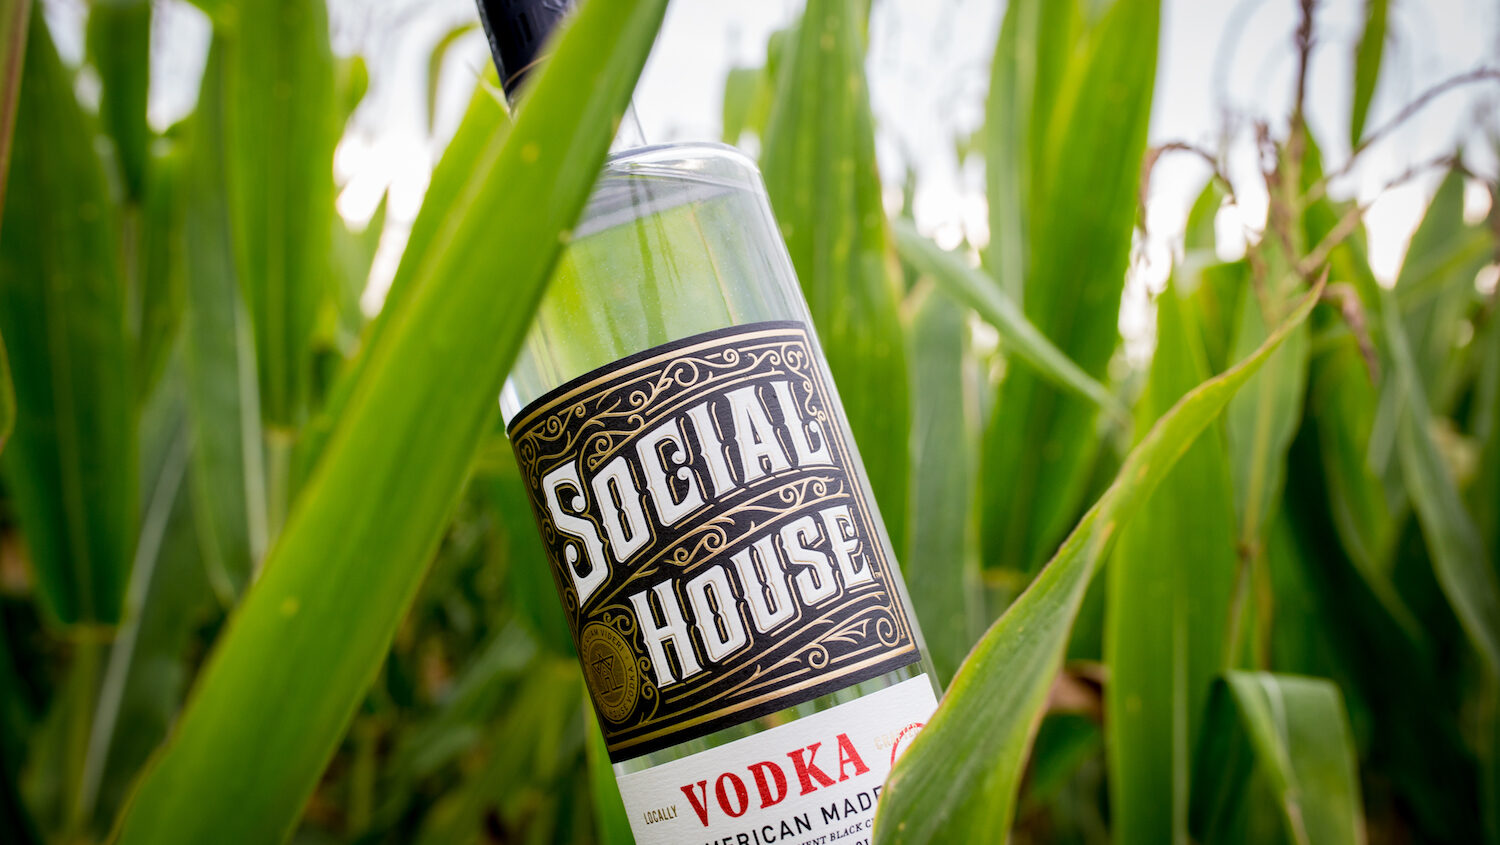 A bottle of social house vodka in a corn field.